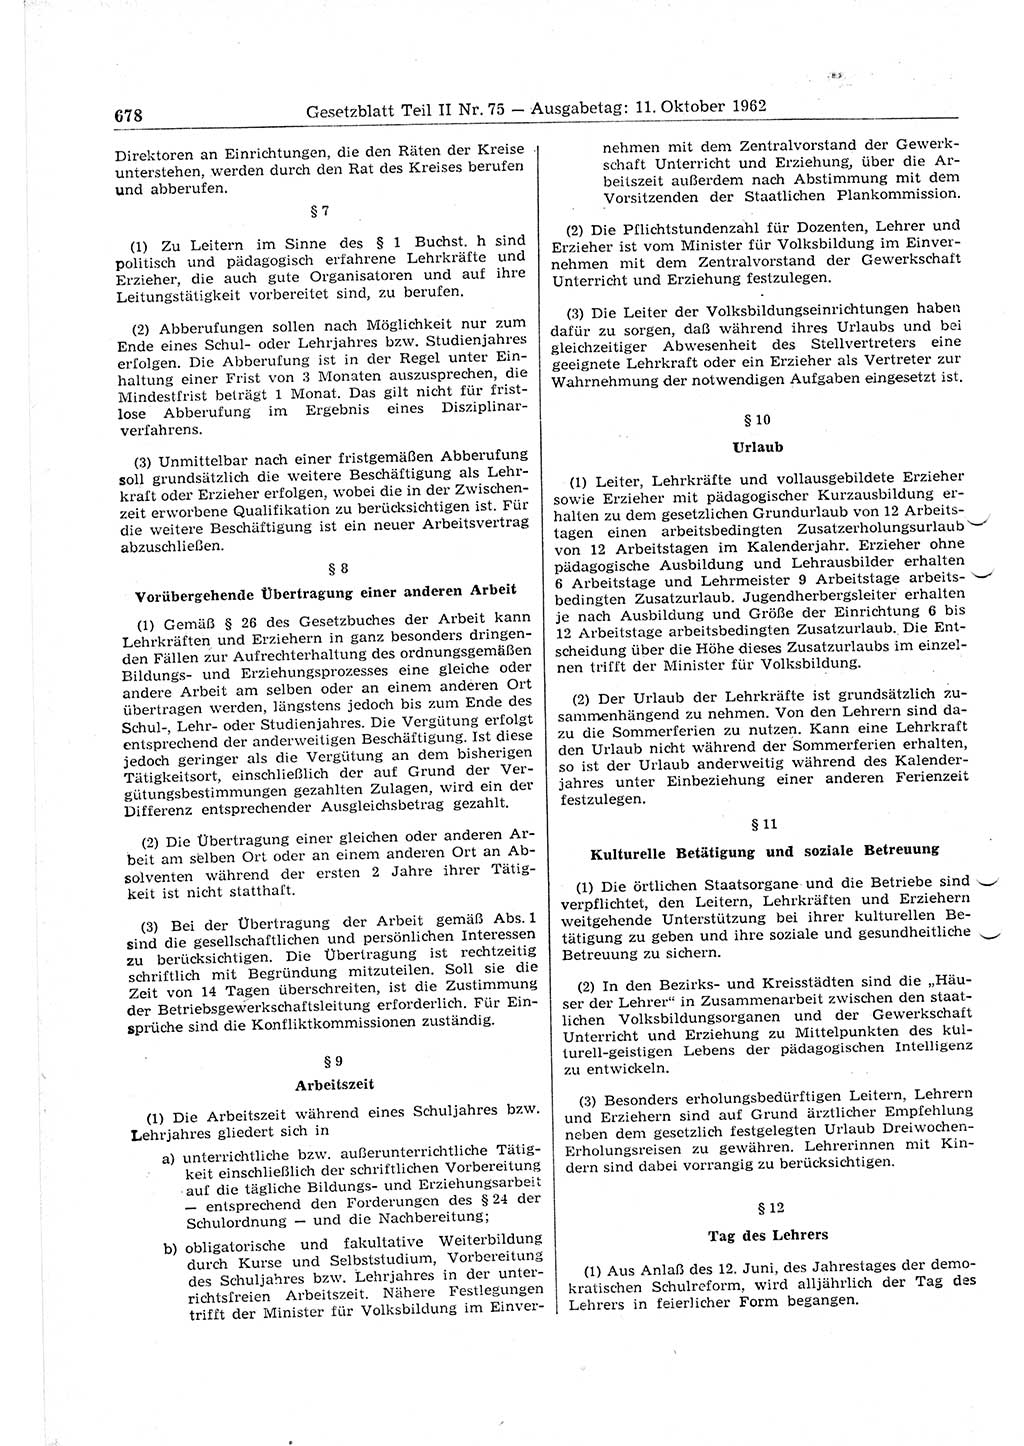 Gesetzblatt (GBl.) der Deutschen Demokratischen Republik (DDR) Teil ⅠⅠ 1962, Seite 678 (GBl. DDR ⅠⅠ 1962, S. 678)